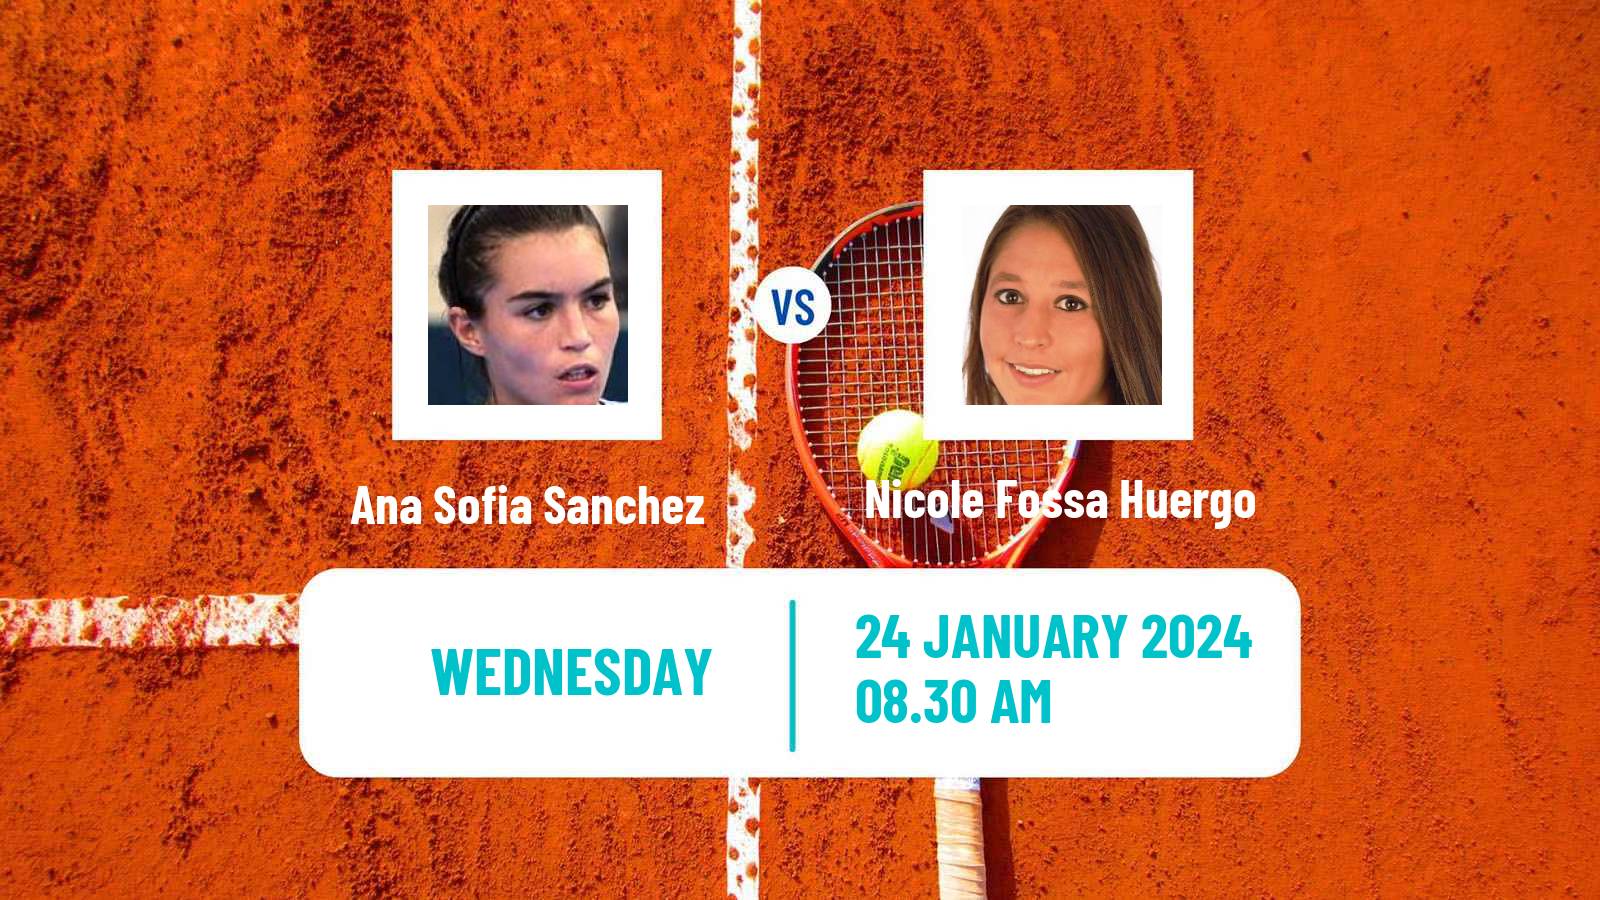 Tennis ITF W35 Buenos Aires 2 Women Ana Sofia Sanchez - Nicole Fossa Huergo